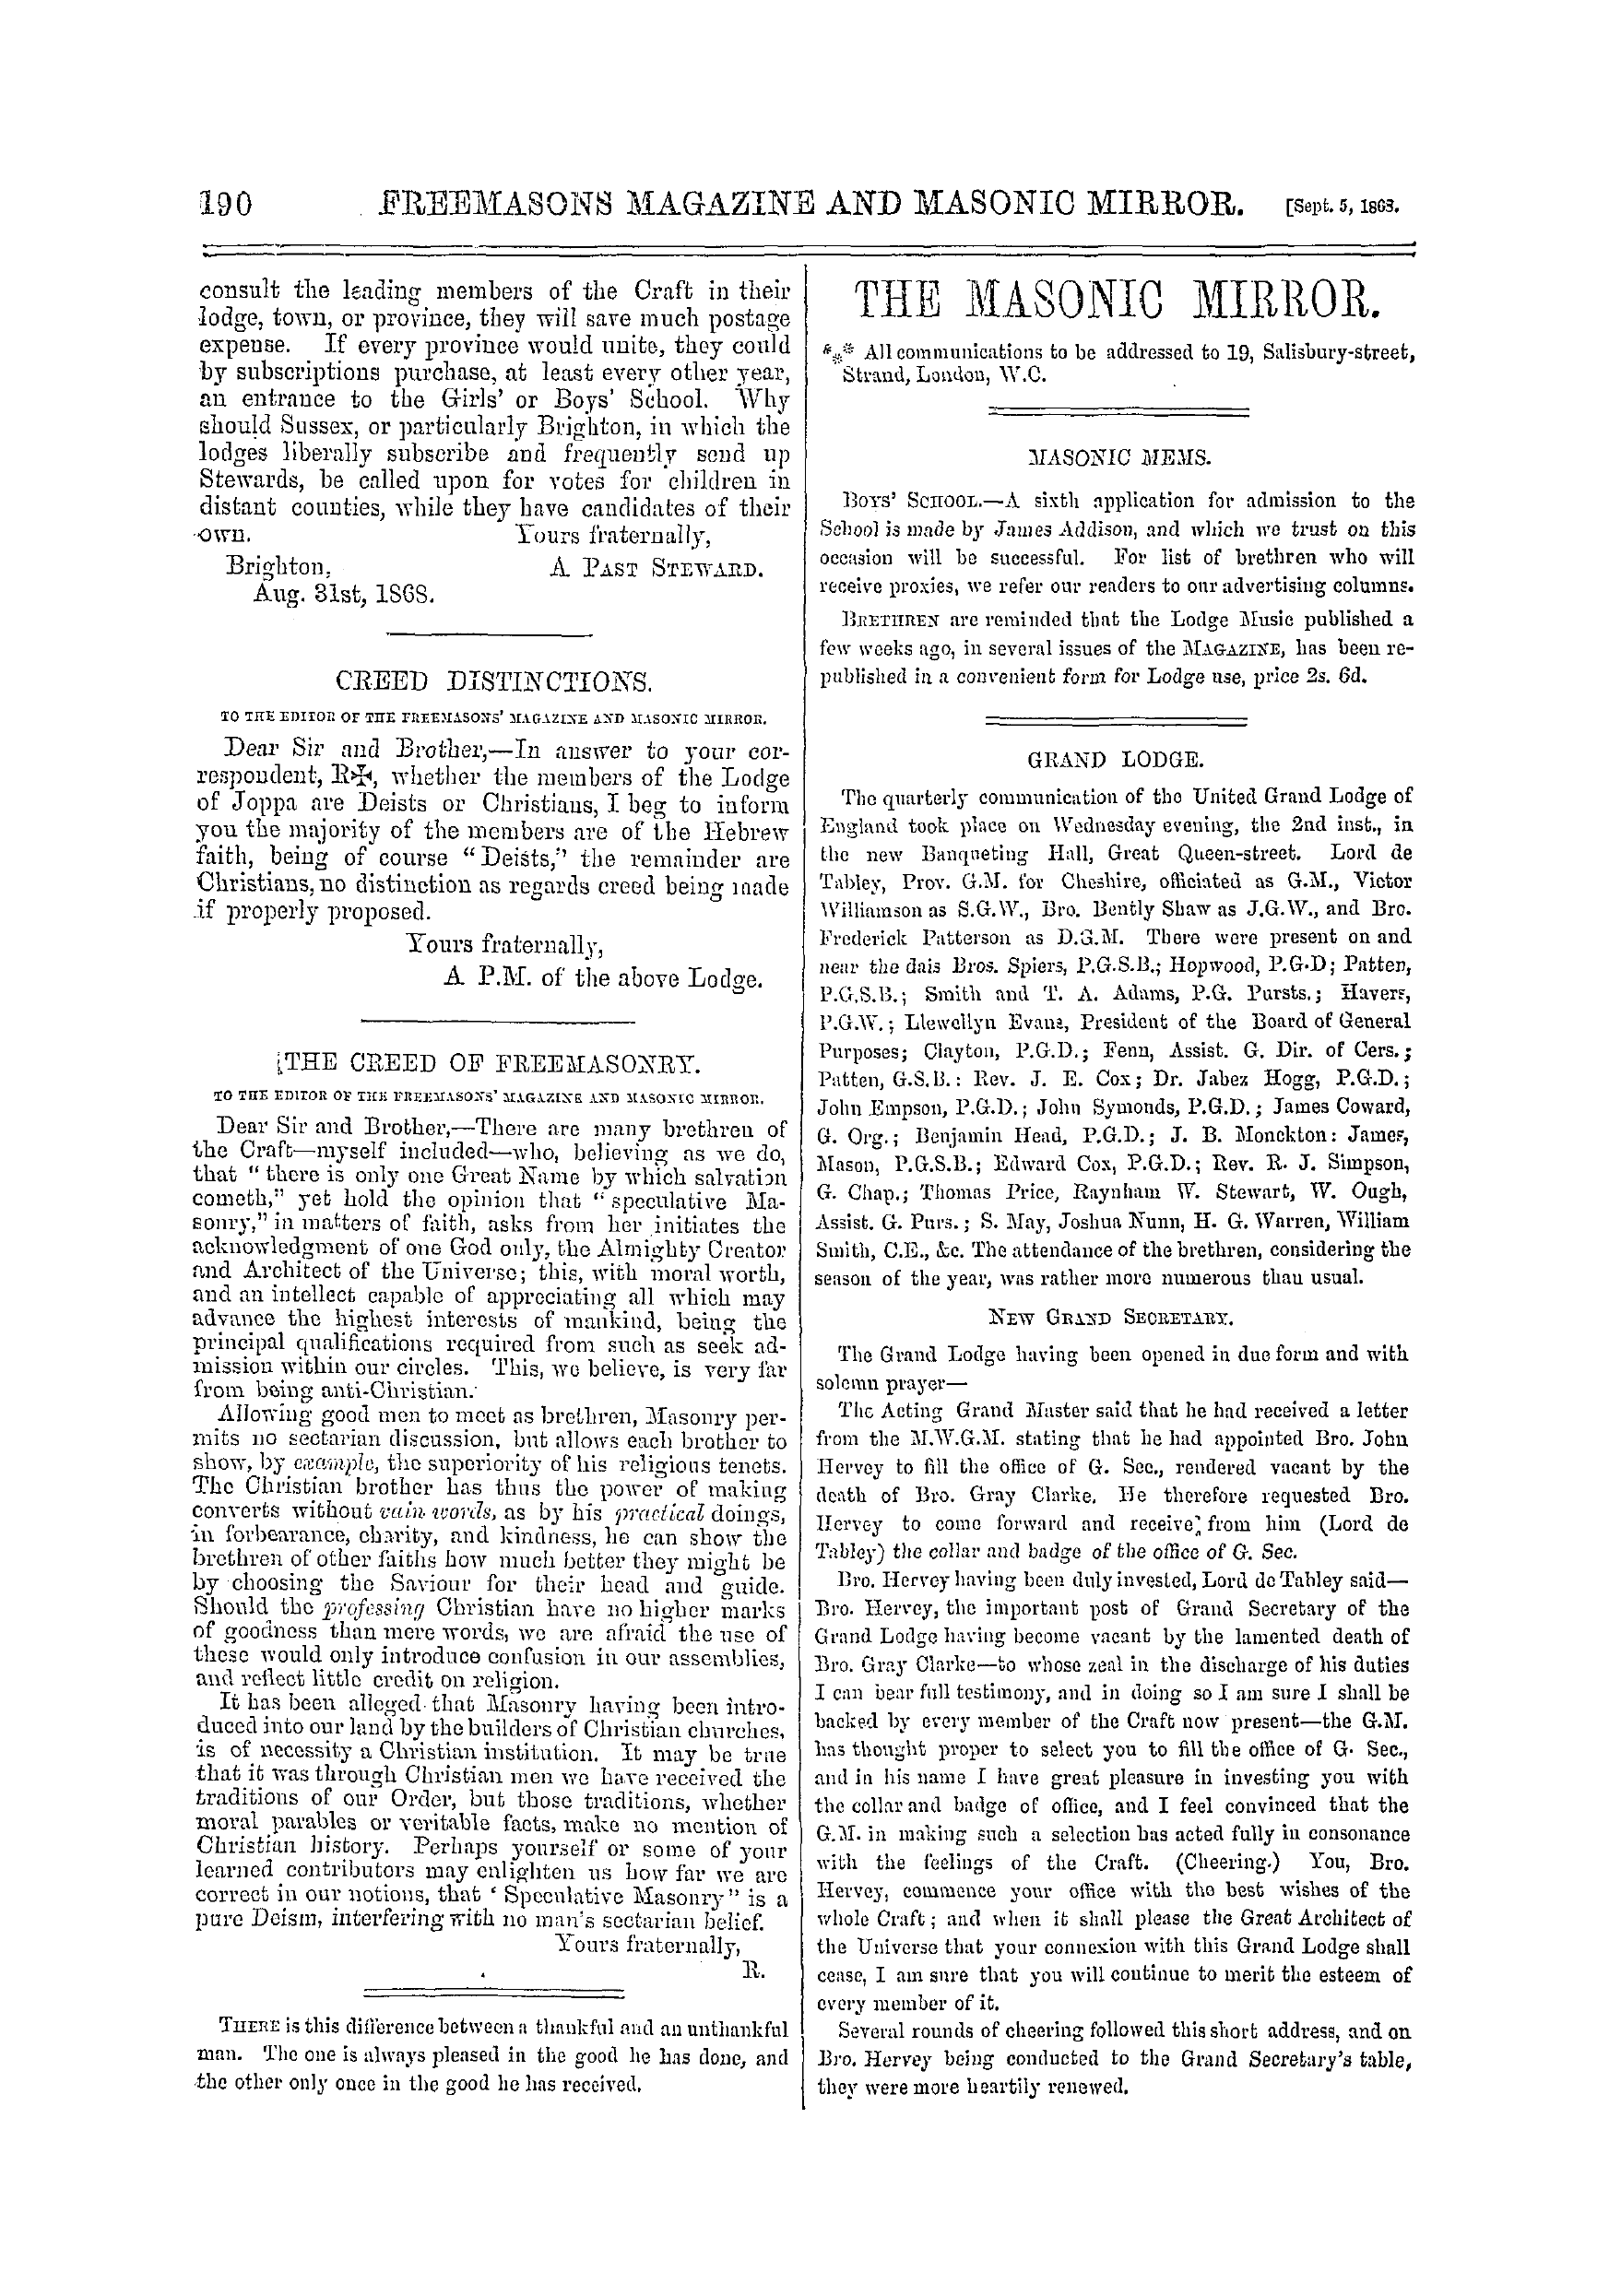 The Freemasons' Monthly Magazine: 1868-09-05: 10